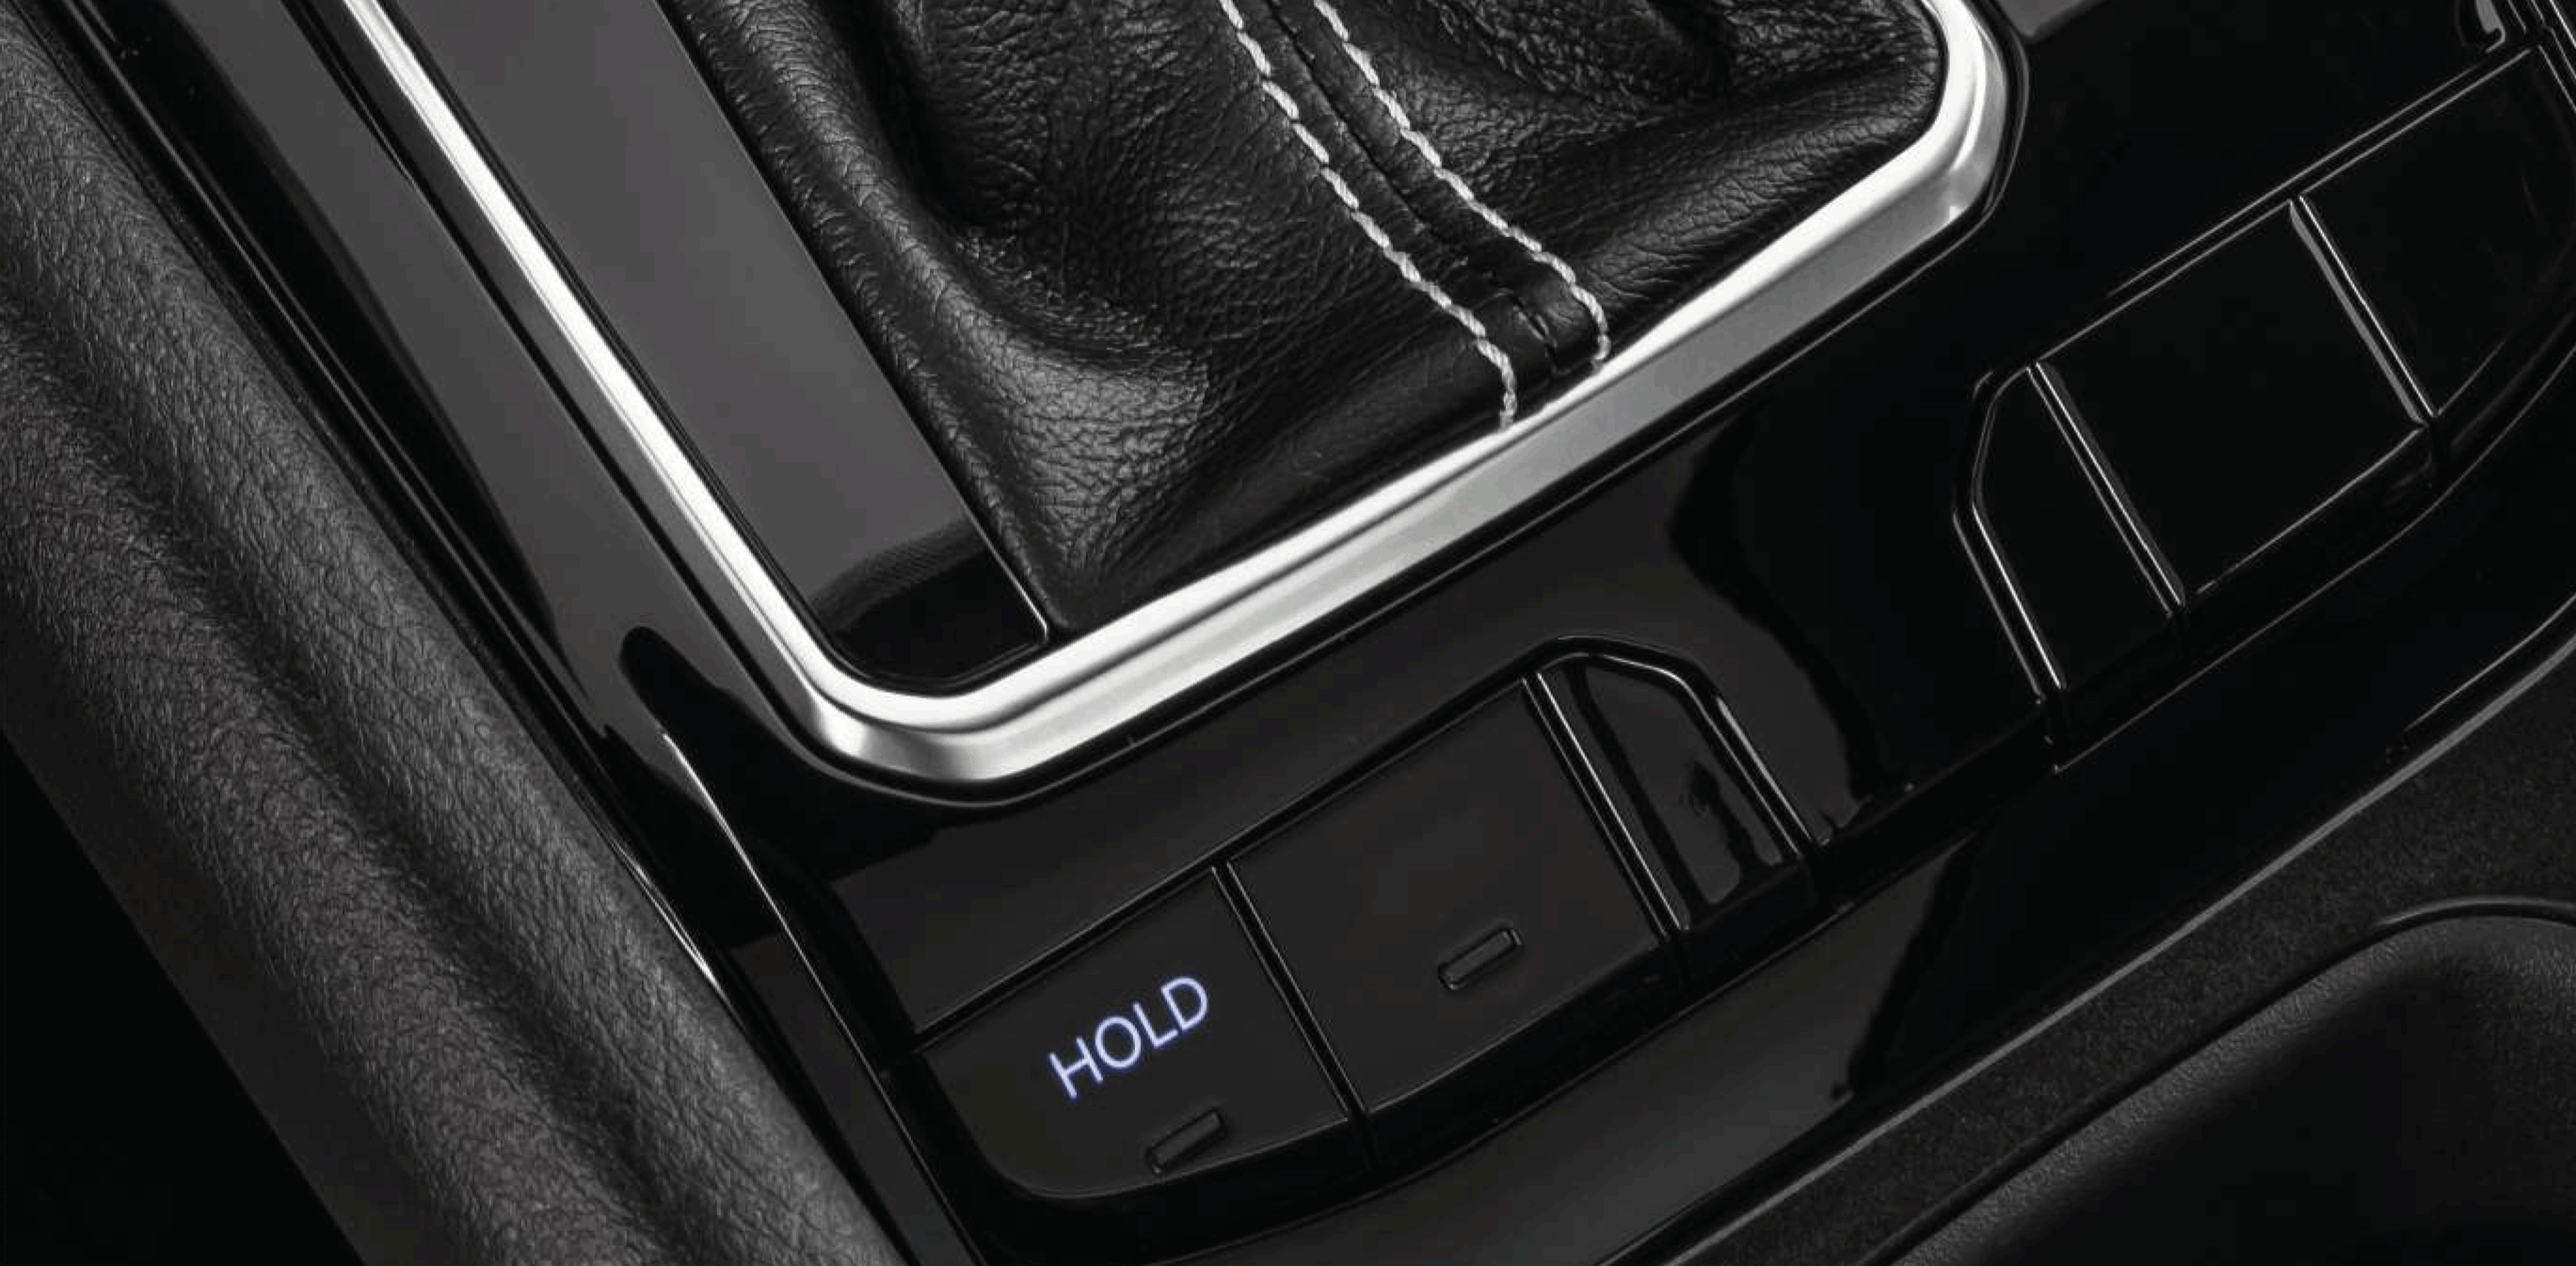 Botón de "HOLD" en la palanca de cambios de un Jeep